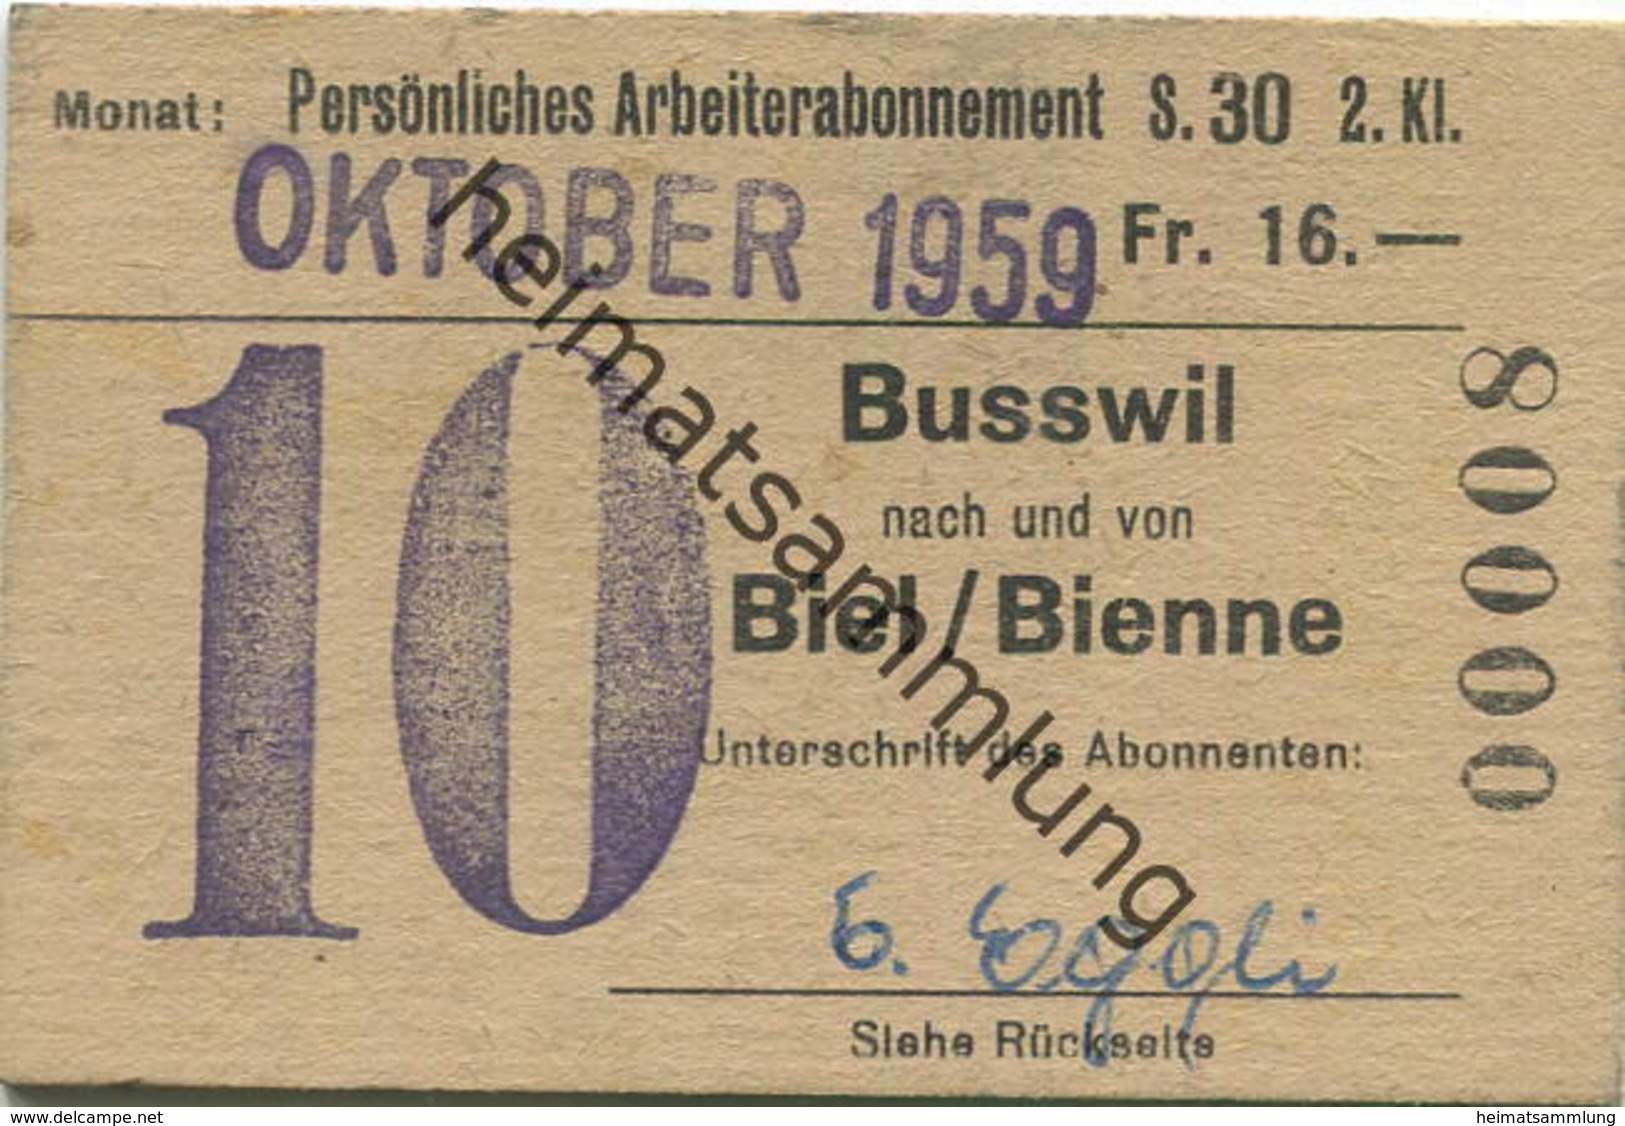 Schweiz - Persönliches Arbeiterabonnement - Busswil Nach Und Von Biel/Bienne - Fahrkarte 2. Klasse 1959 - Europe